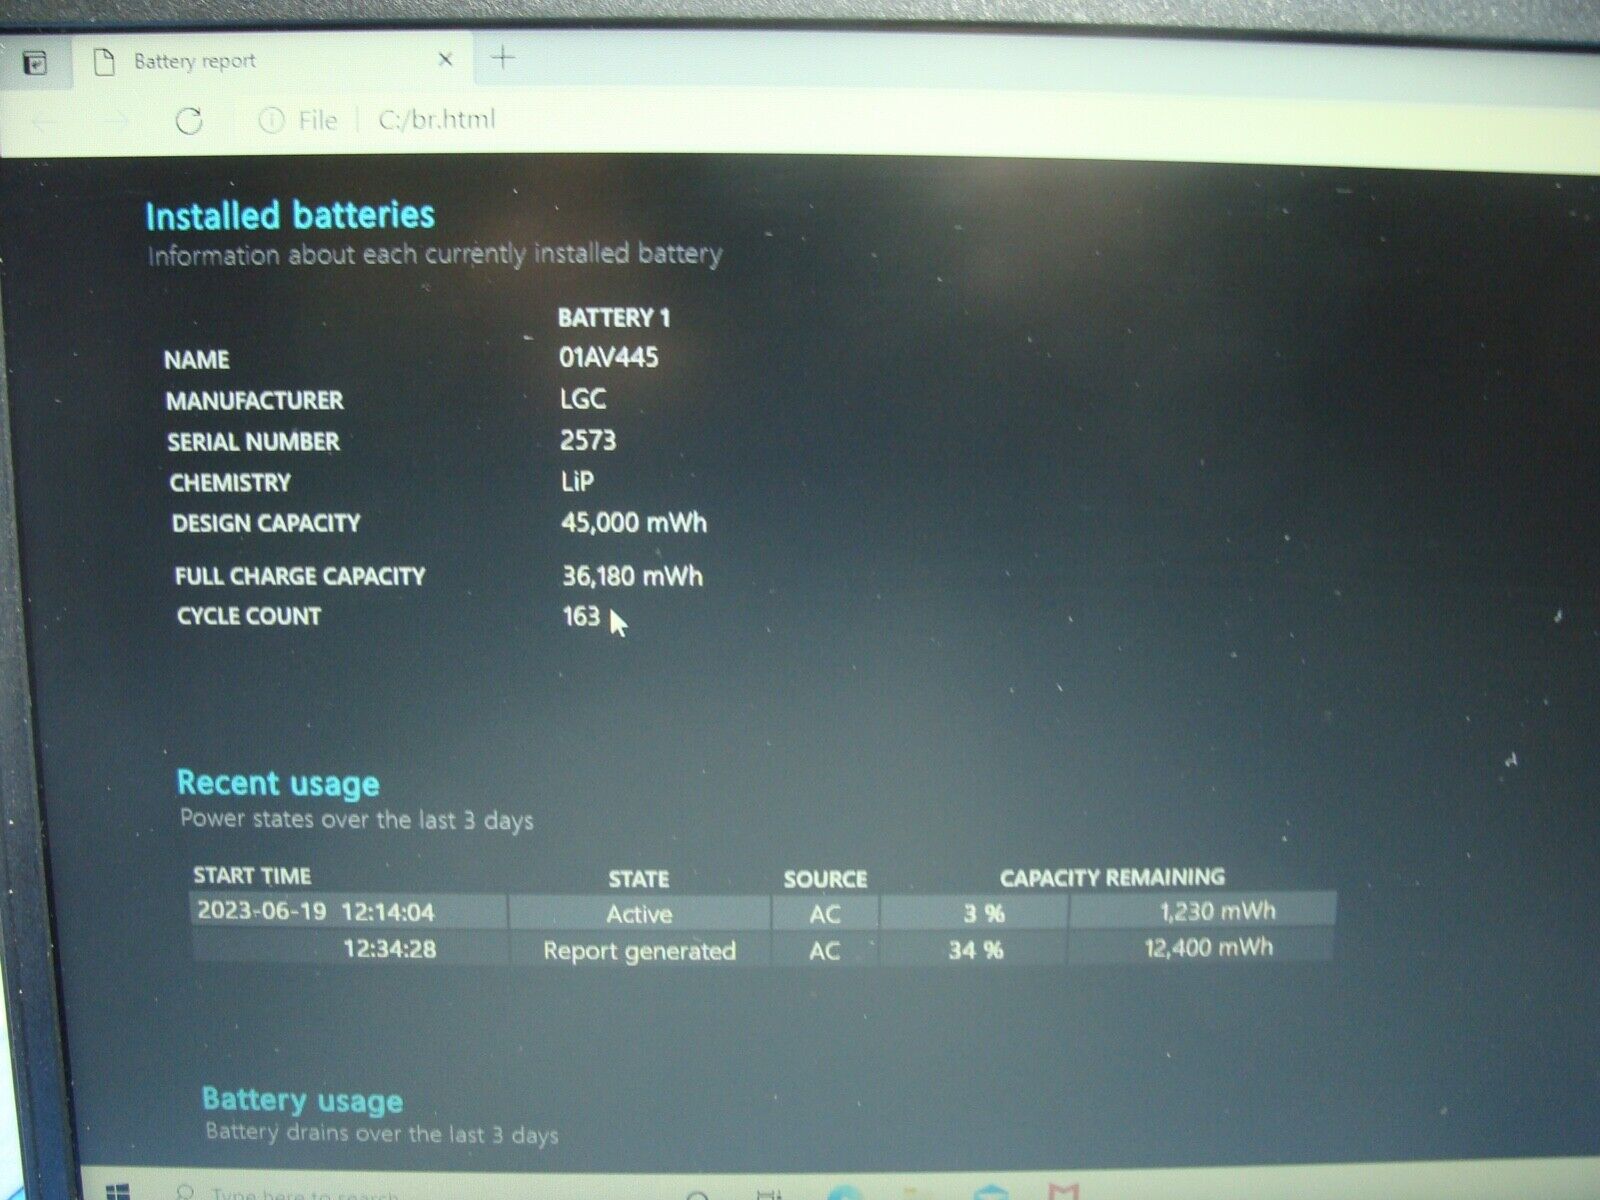 Battery 80% Lenovo ThinkPad E480 Laptop 15.6